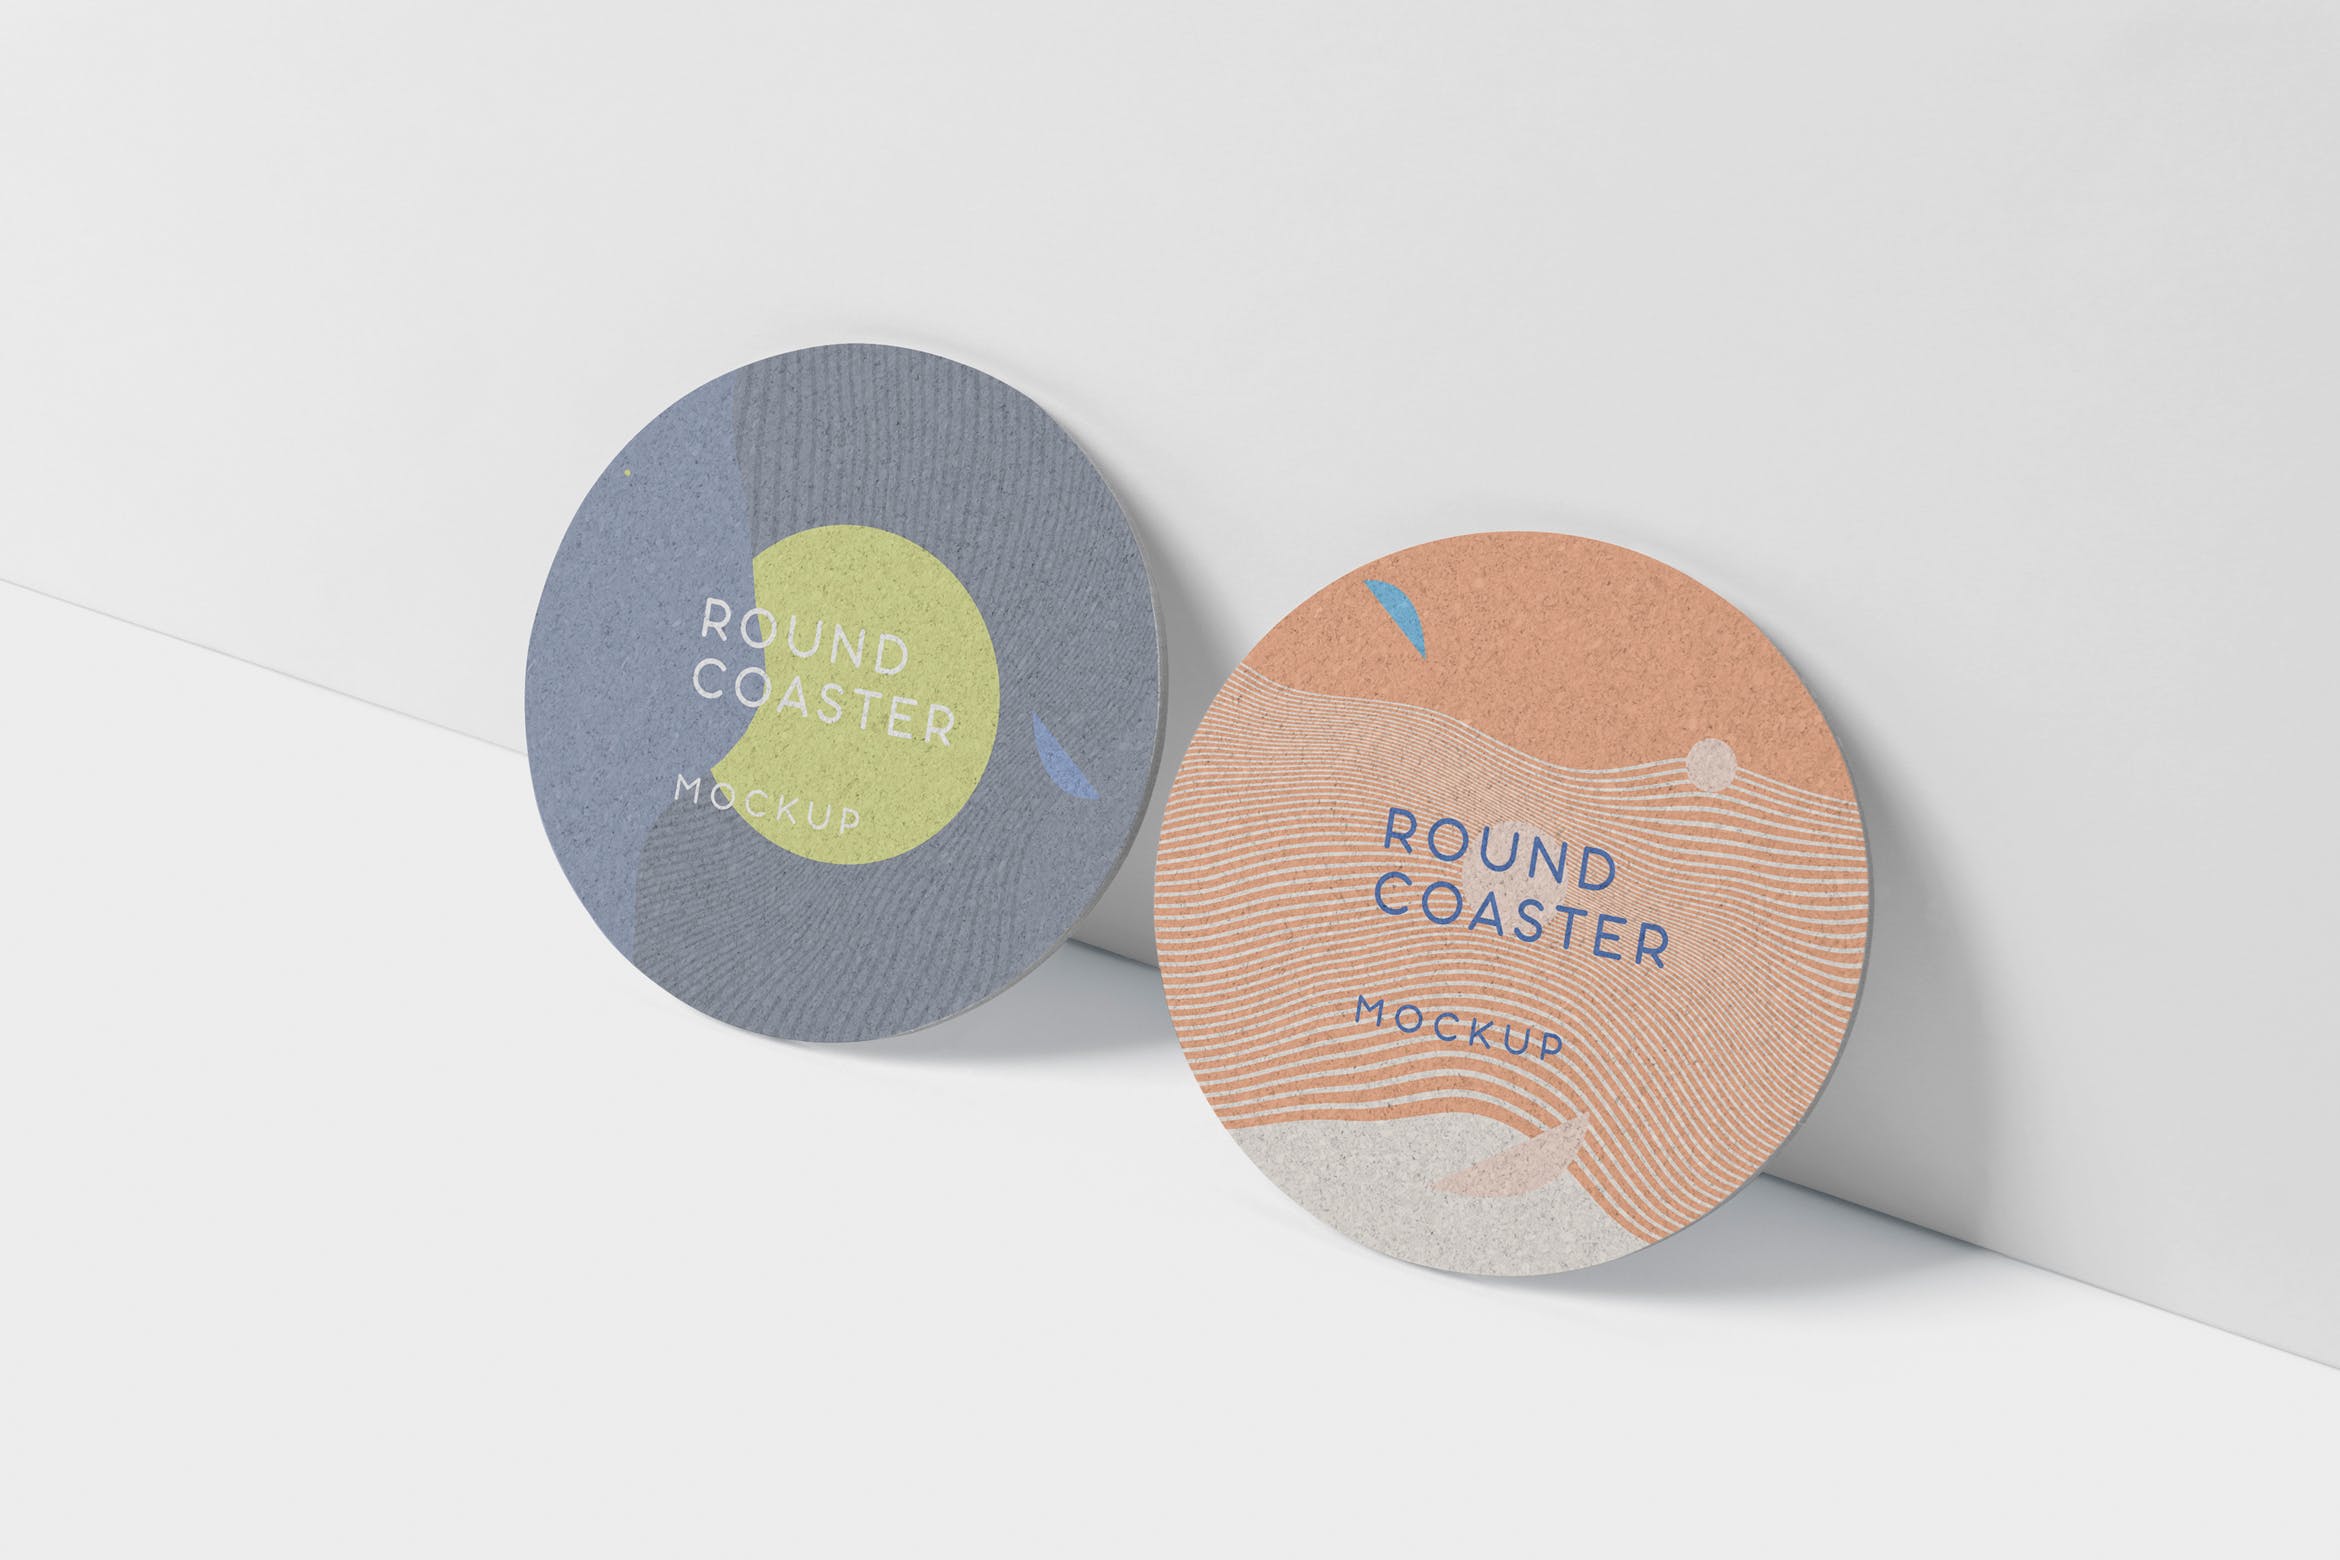 圆形杯垫图案设计效果图蚂蚁素材精选 Round Coaster Mock-Up – Medium Size插图